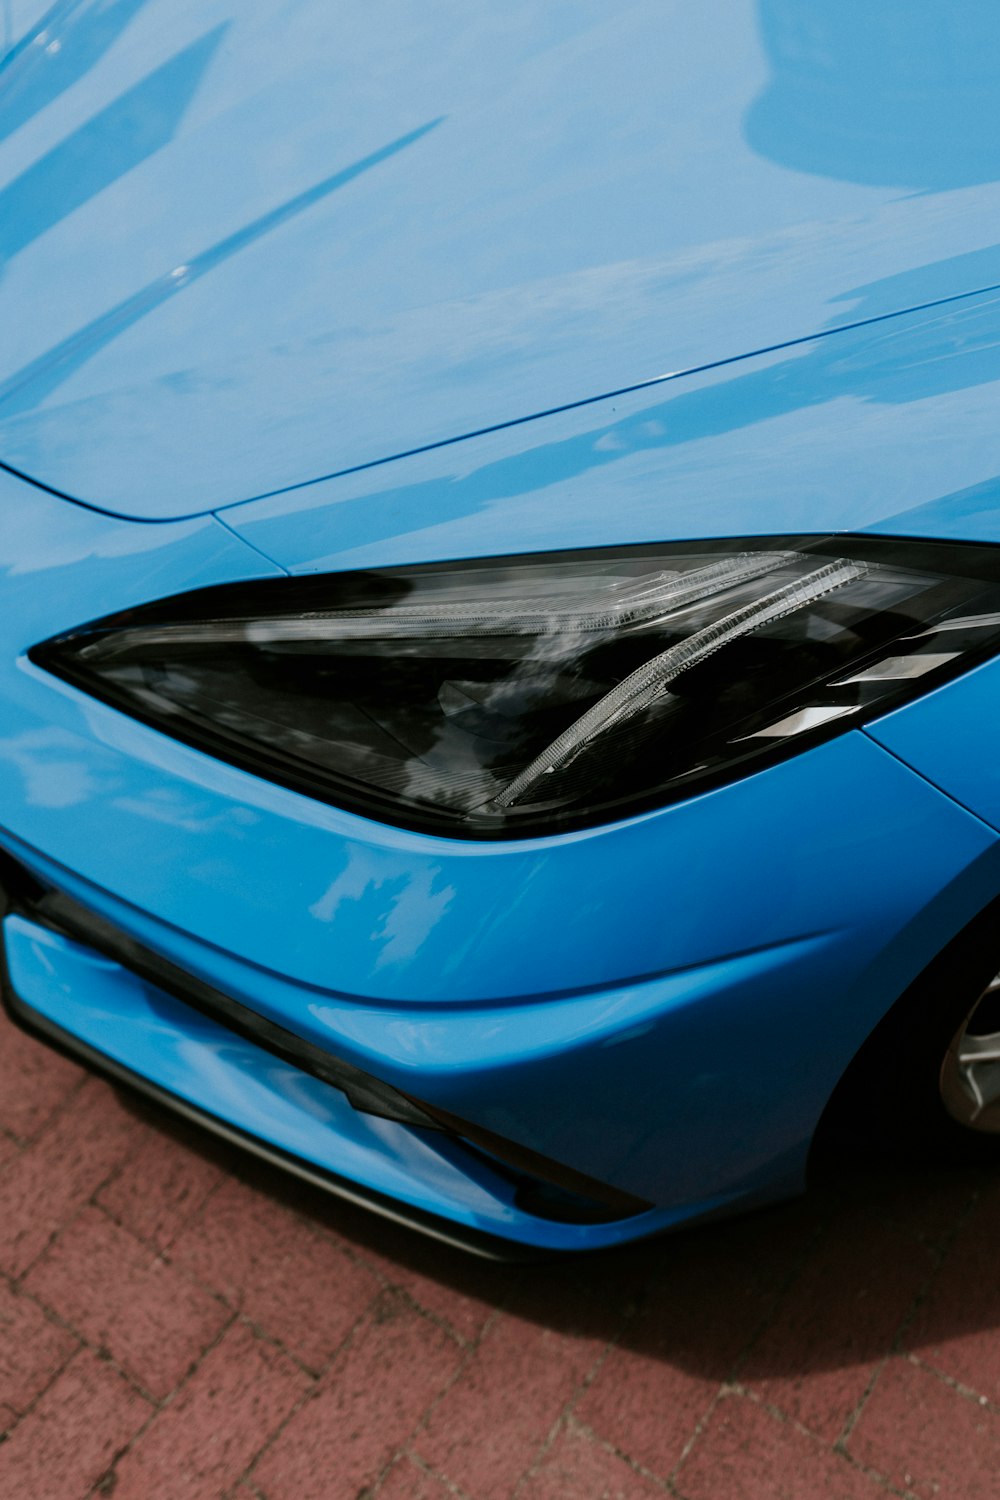 a blue car with a shiny hood